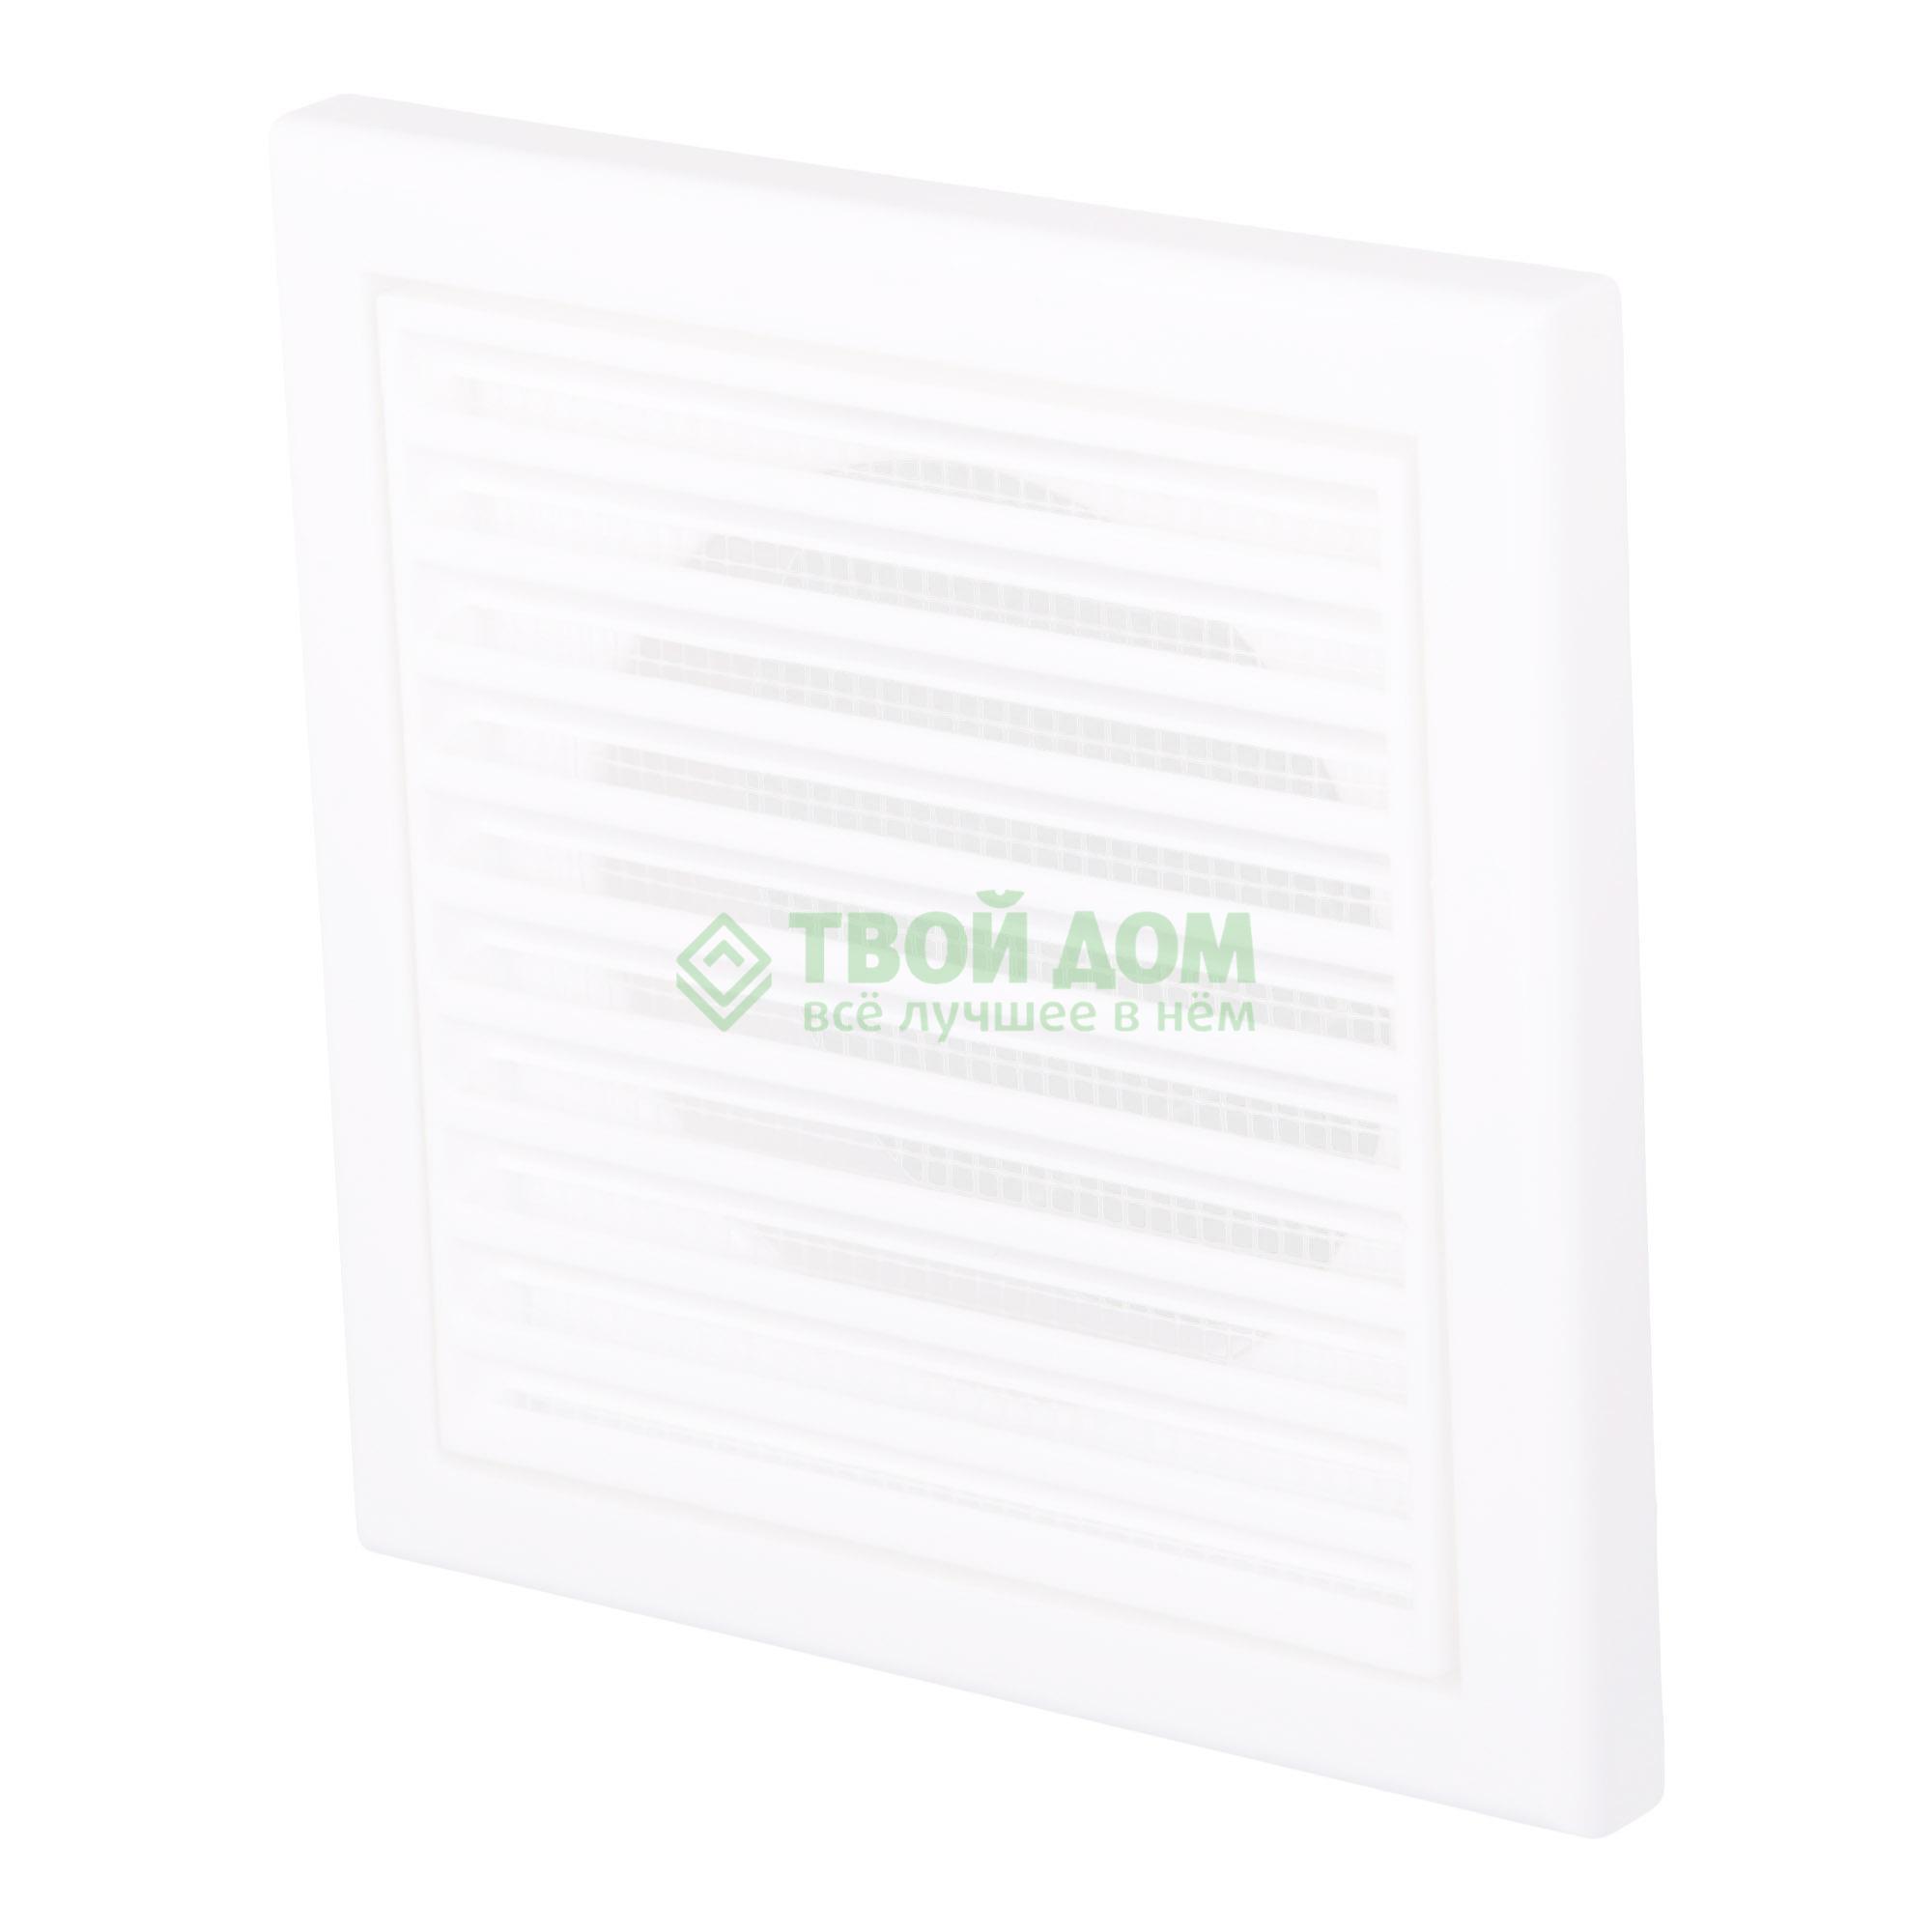 Вентиляционная решетка Вентс МВ 100 ВC, цвет белый